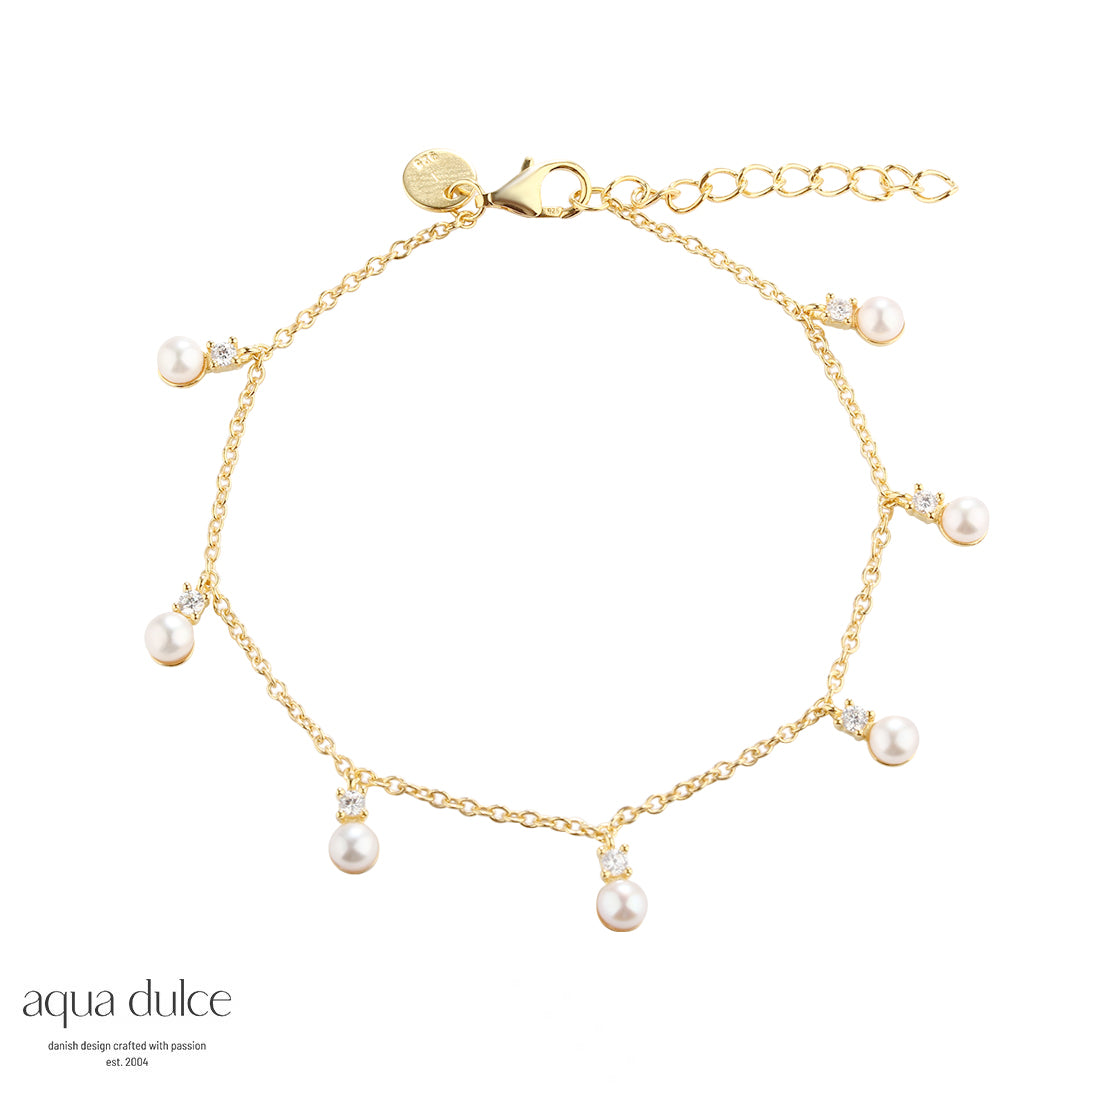 Aqua Dulce - Darling Bubbles armbånd med perle og cz vedhæng i forgyldt sølv